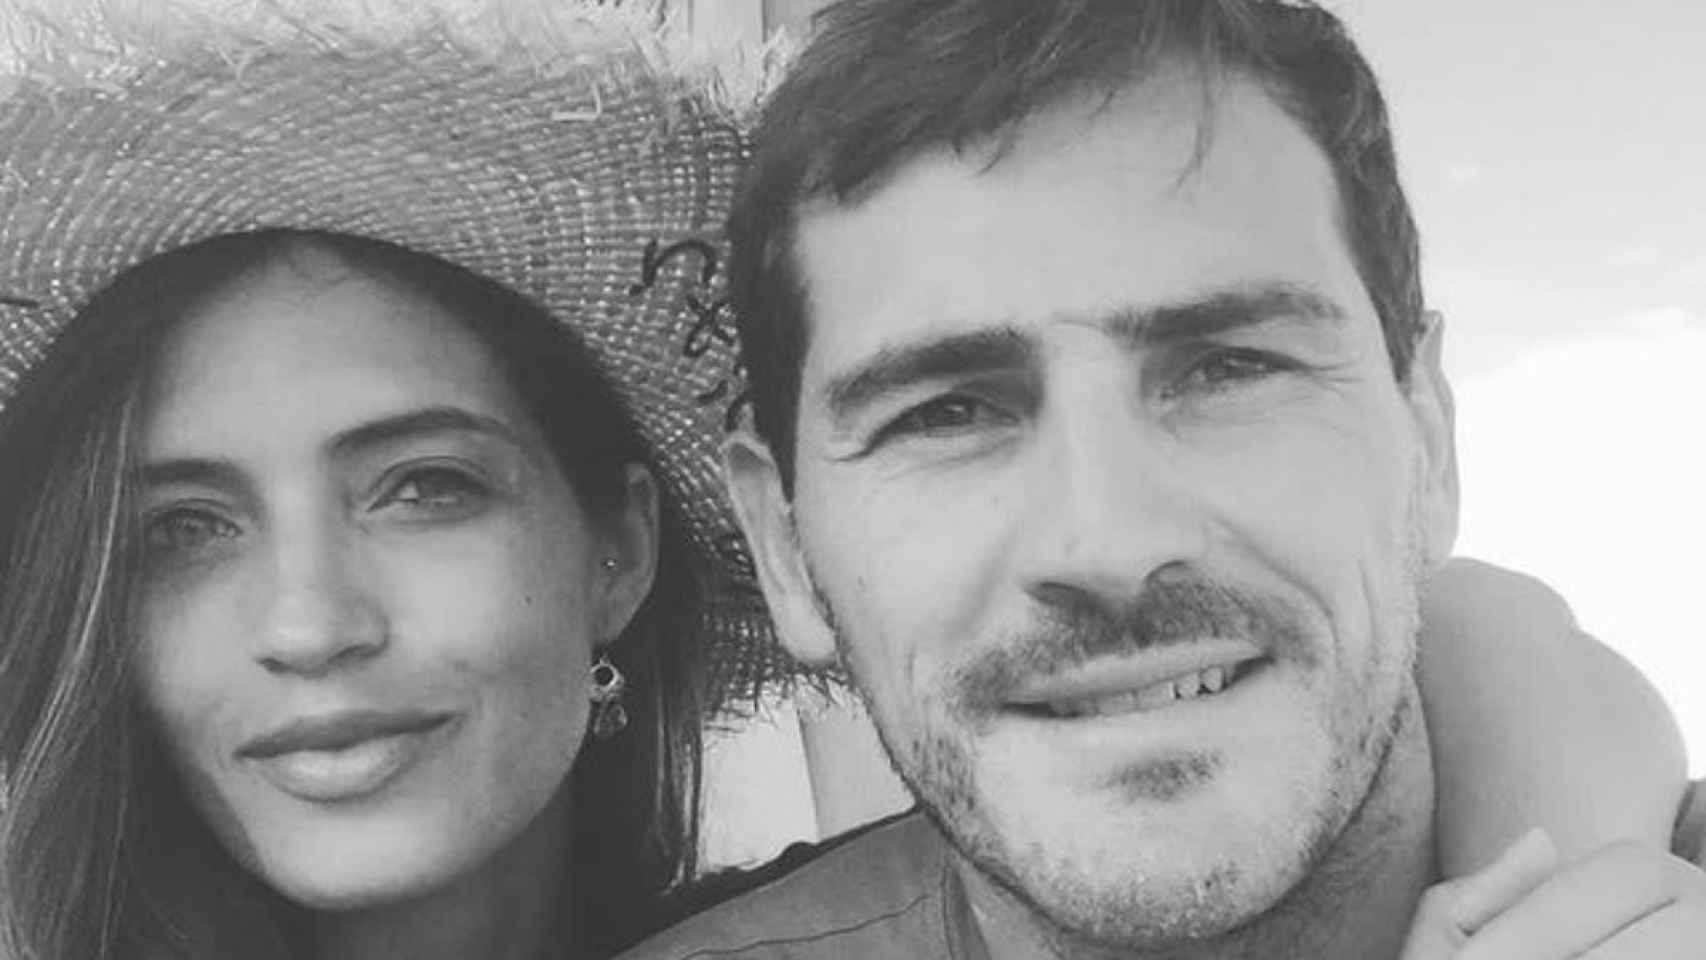 Sara Carbonero e Iker Casillas anuncian su ruptura